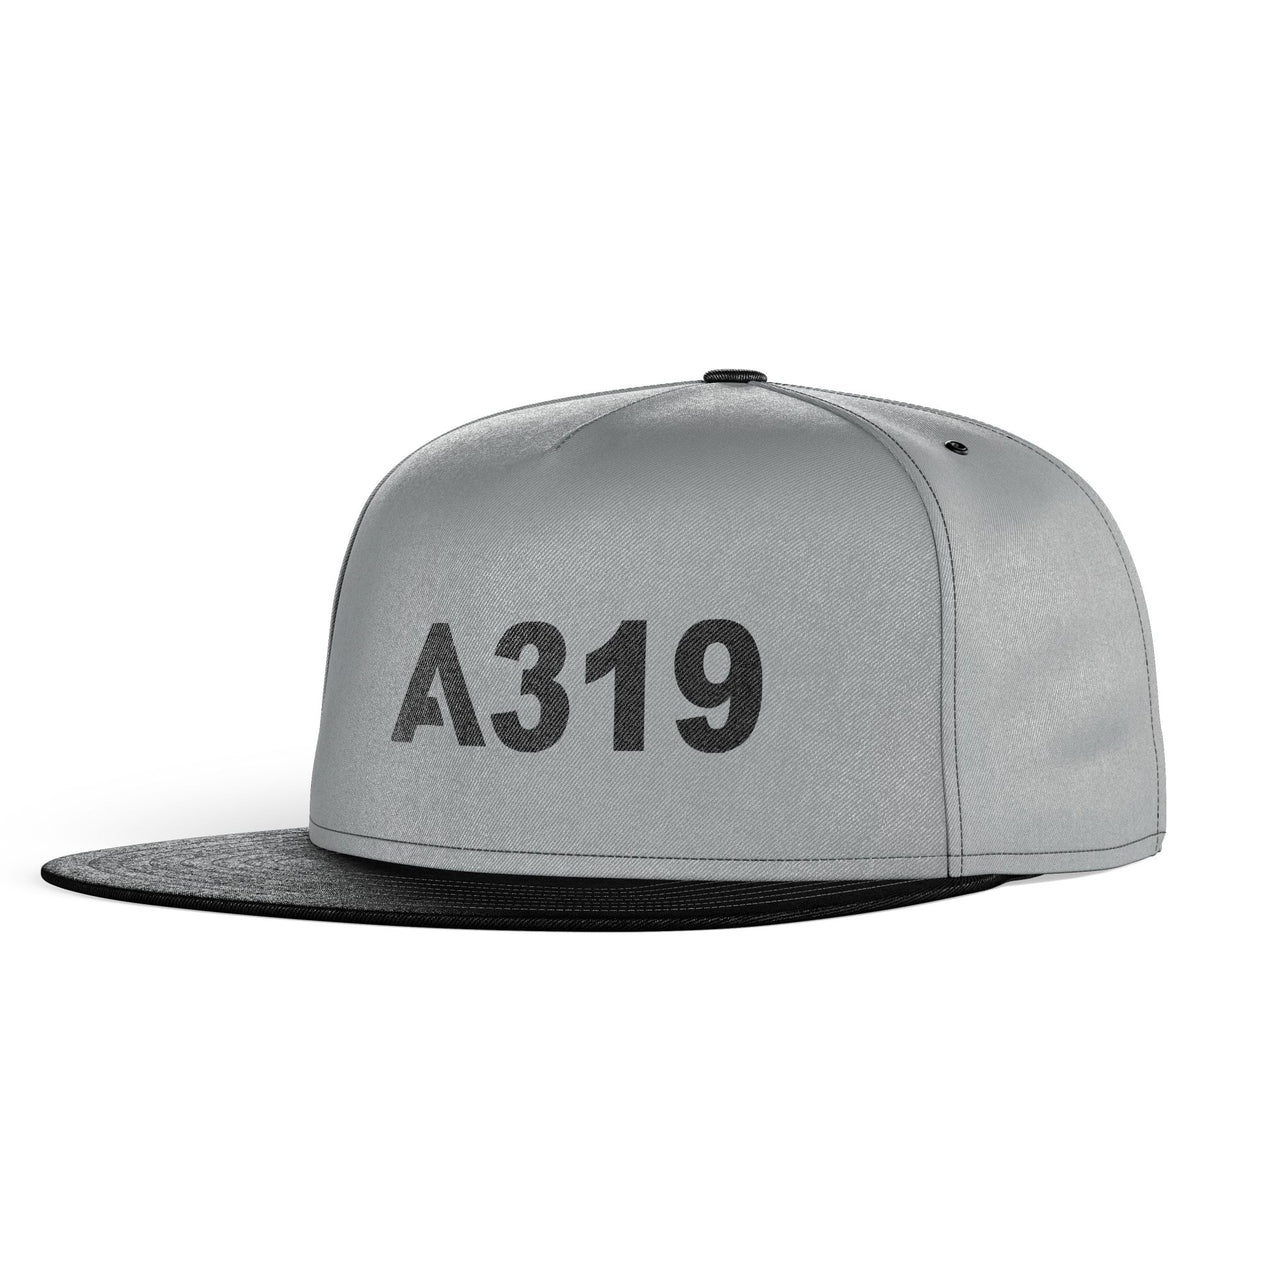 A319 Flat Text Designed Snapback Caps & Hats